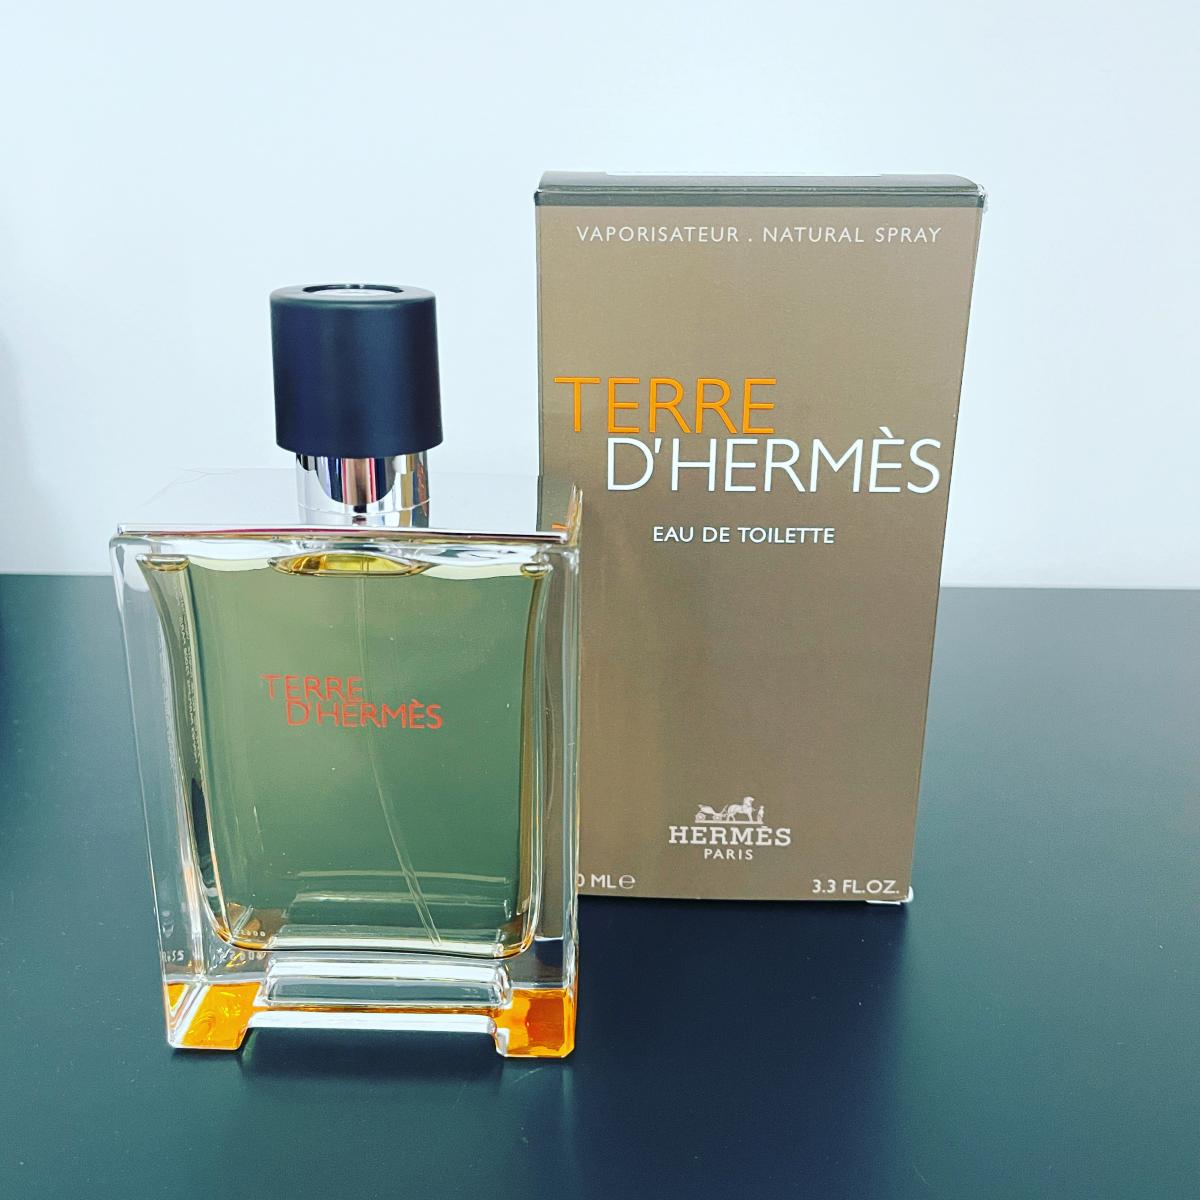 Terre d'Hermes Hermès cologne - a fragrance for men 2006